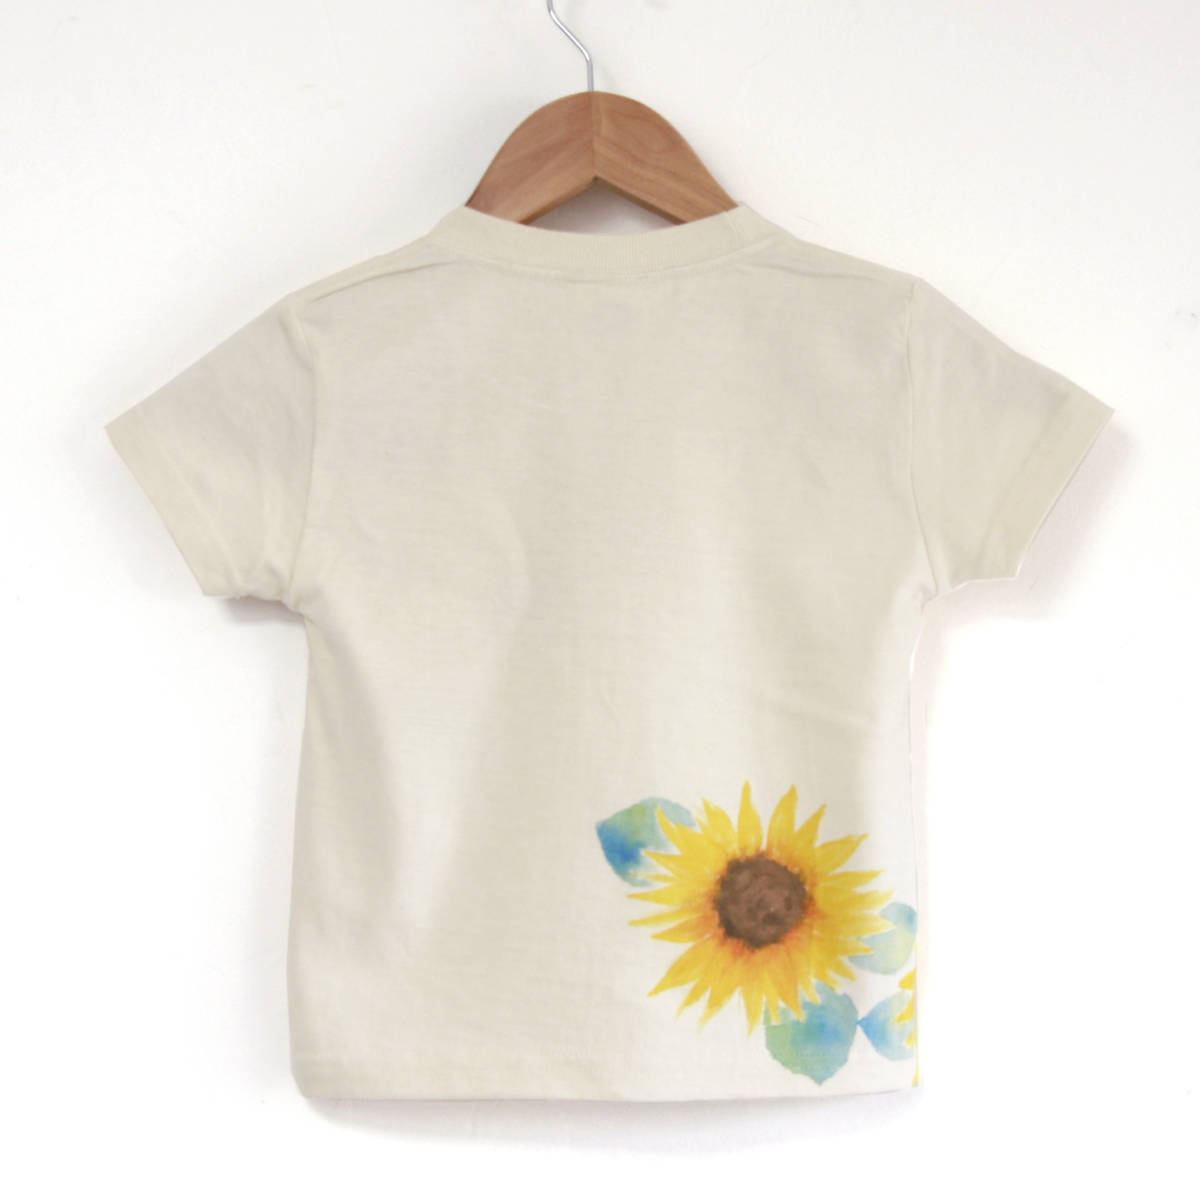  child clothes Kids T-shirt 140 size natural sunflower pattern T-shirt hand made hand .. T-shirt floral print summer present 